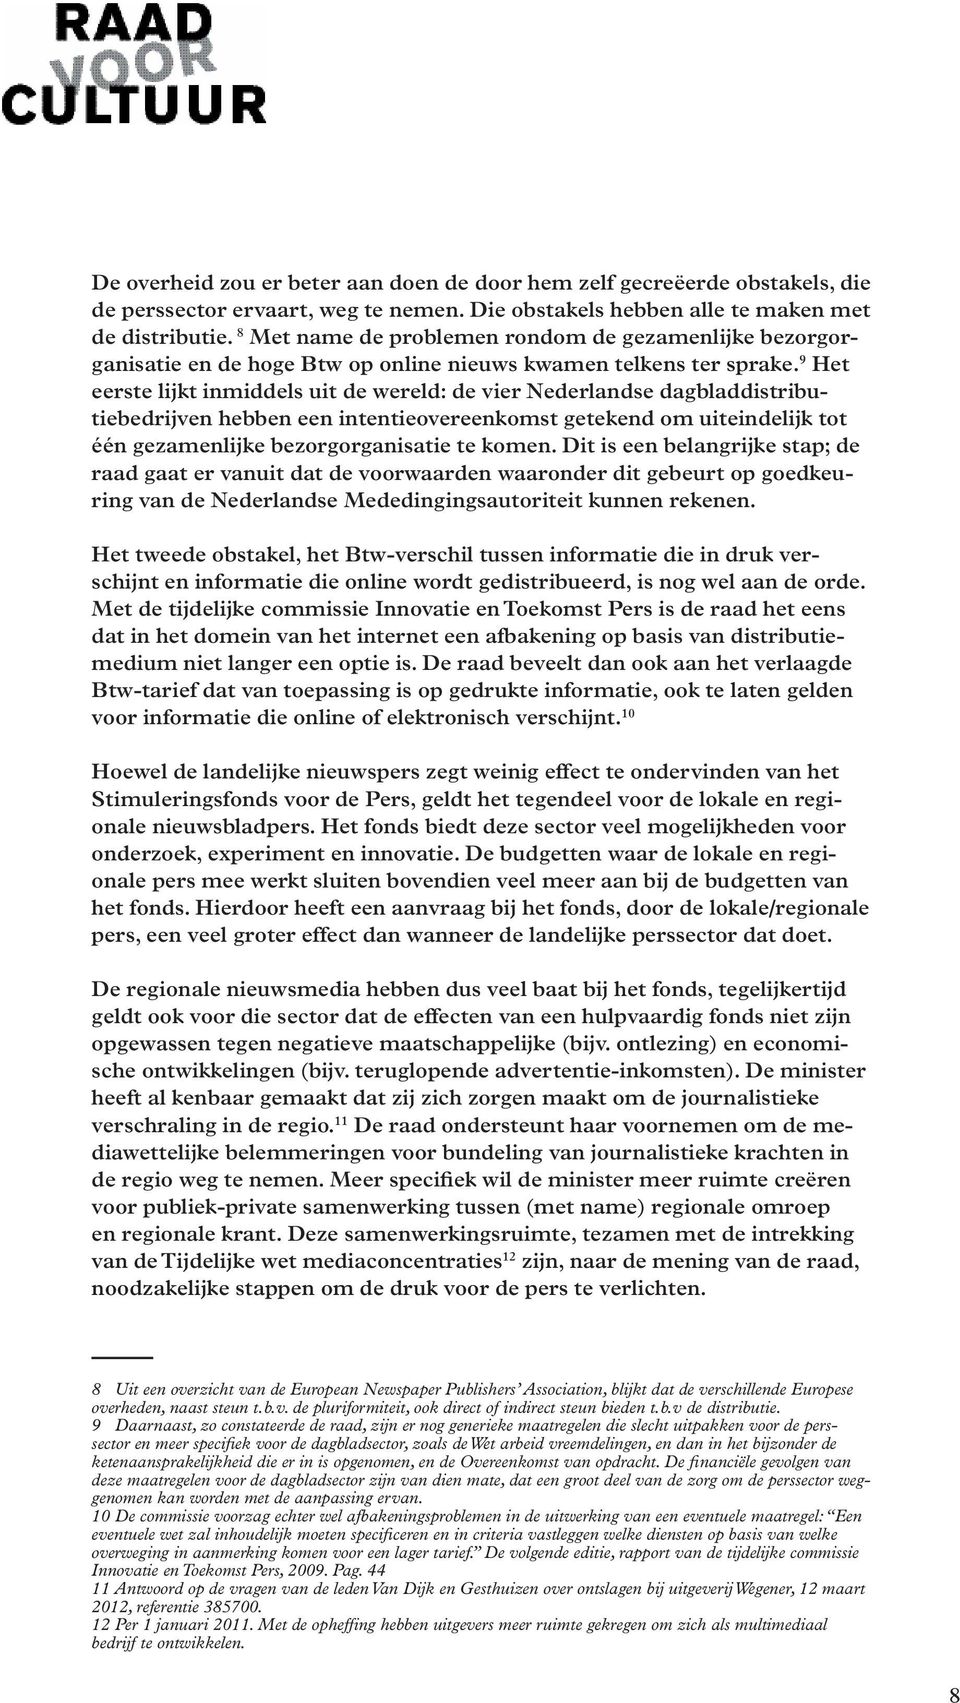 9 Het eerste lijkt inmiddels uit de wereld: de vier Nederlandse dagbladdistributiebedrijven hebben een intentieovereenkomst getekend om uiteindelijk tot één gezamenlijke bezorgorganisatie te komen.